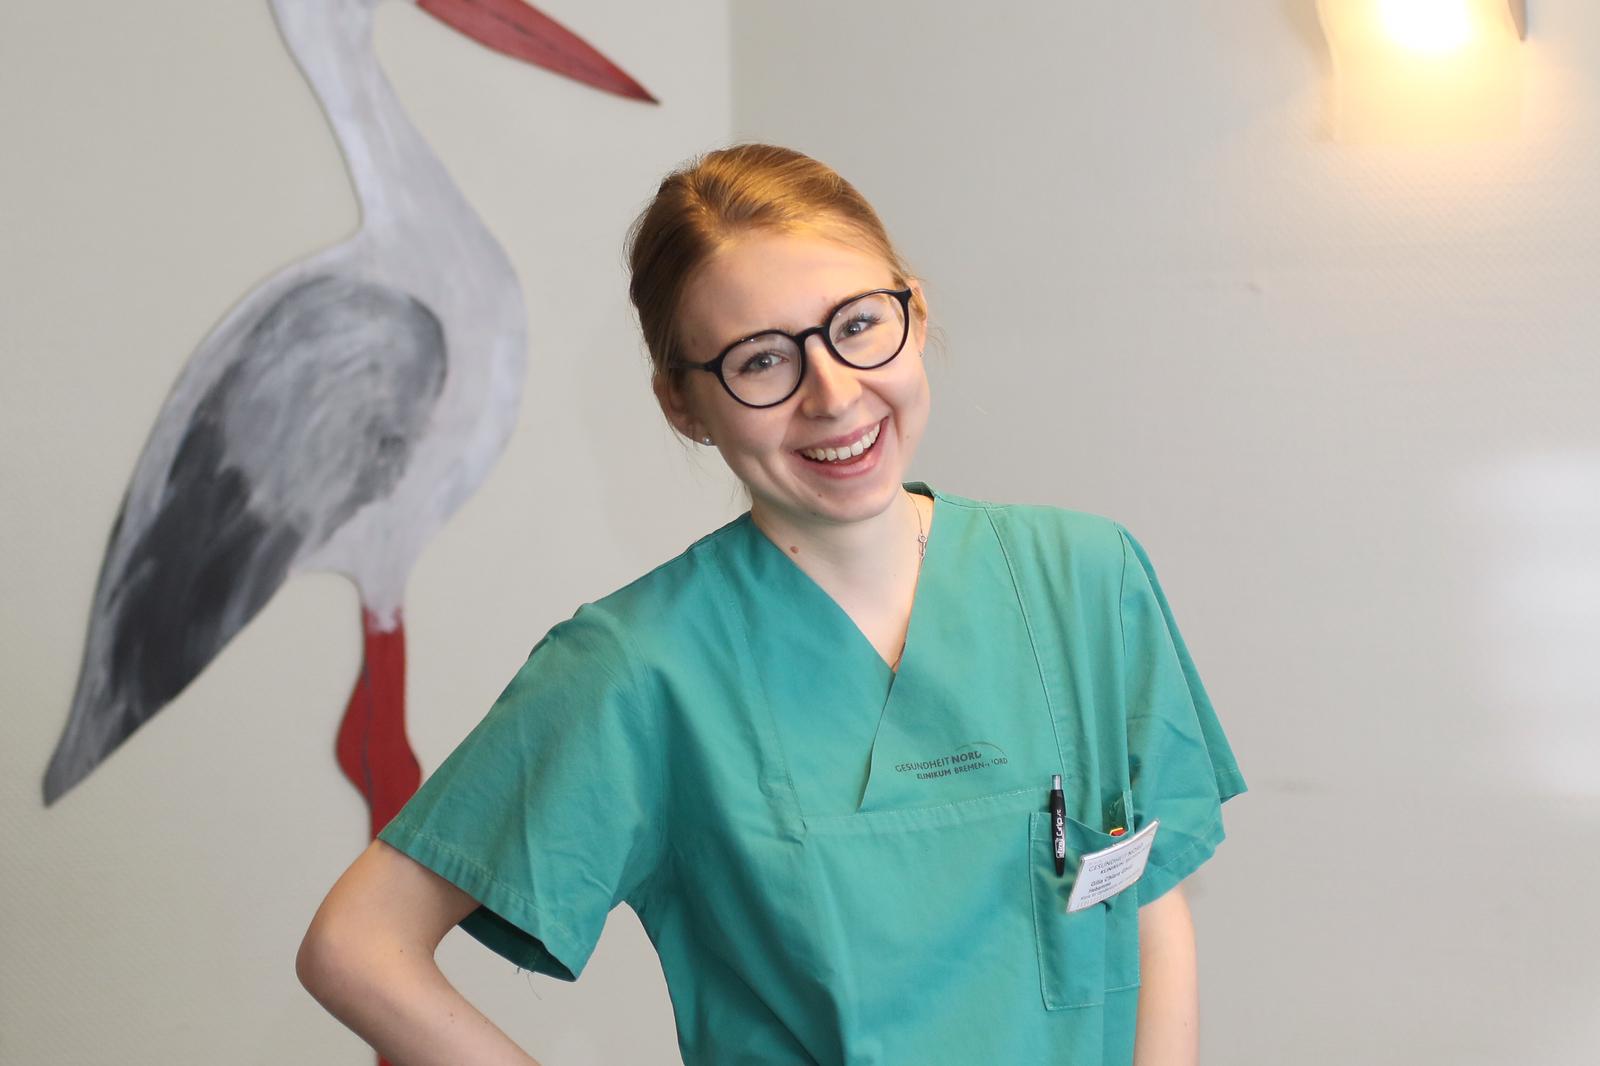 Gilia es la segunda de nuestro grupo de enfermeras y matronas que llega a Alemania. Ya no quería esperar en Italia hasta que el mundo entero volviera a la normalidad.